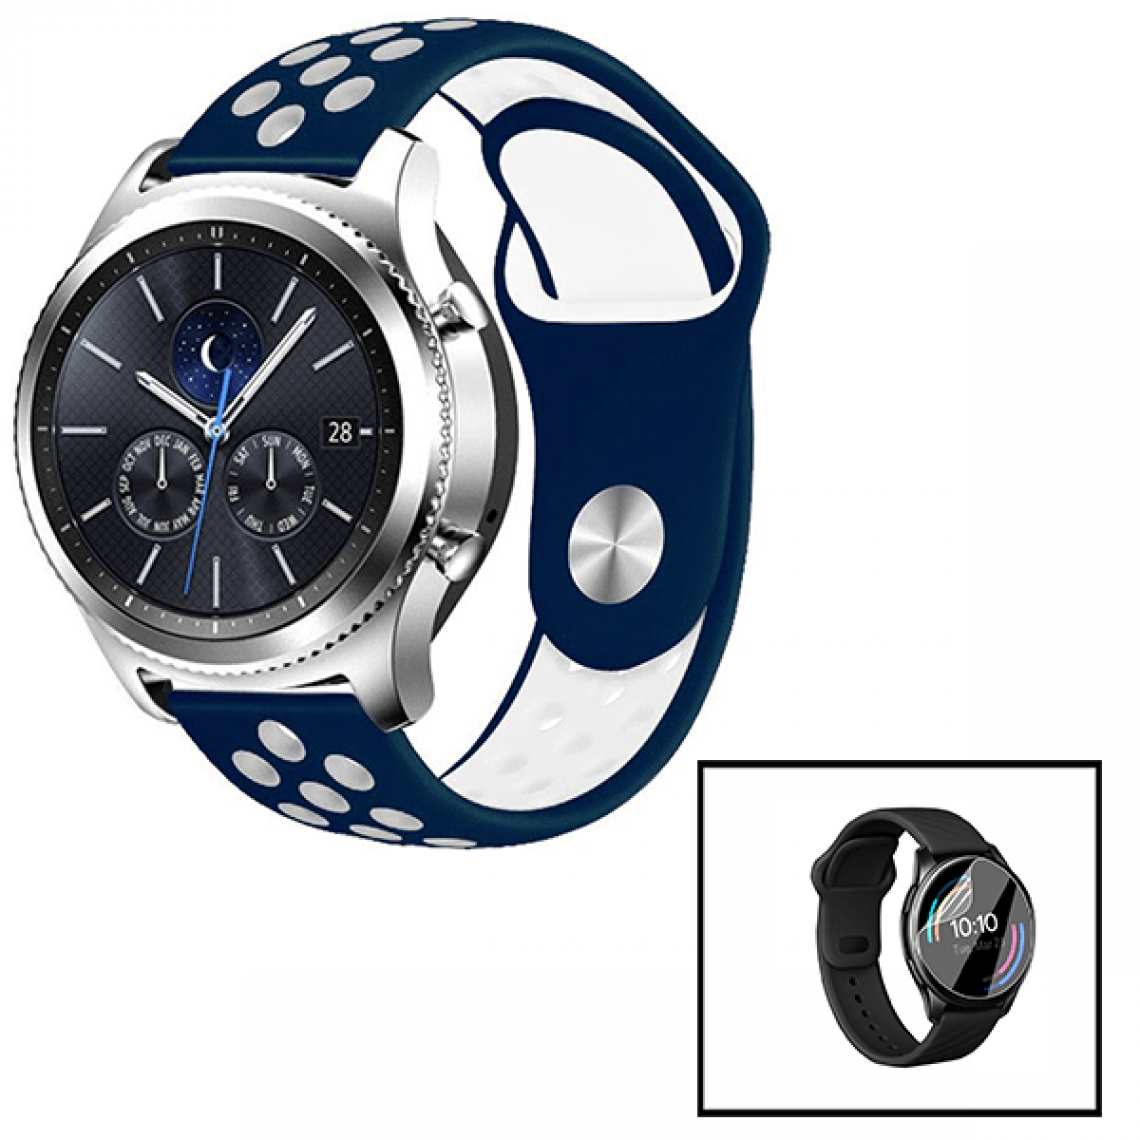 Phonecare - Kit Bracelet SportyStyle + Film de Hydrogel pour Samsung Galaxy Watch Bluetooth 42mm - Bleu foncé / Blanc - Autres accessoires smartphone